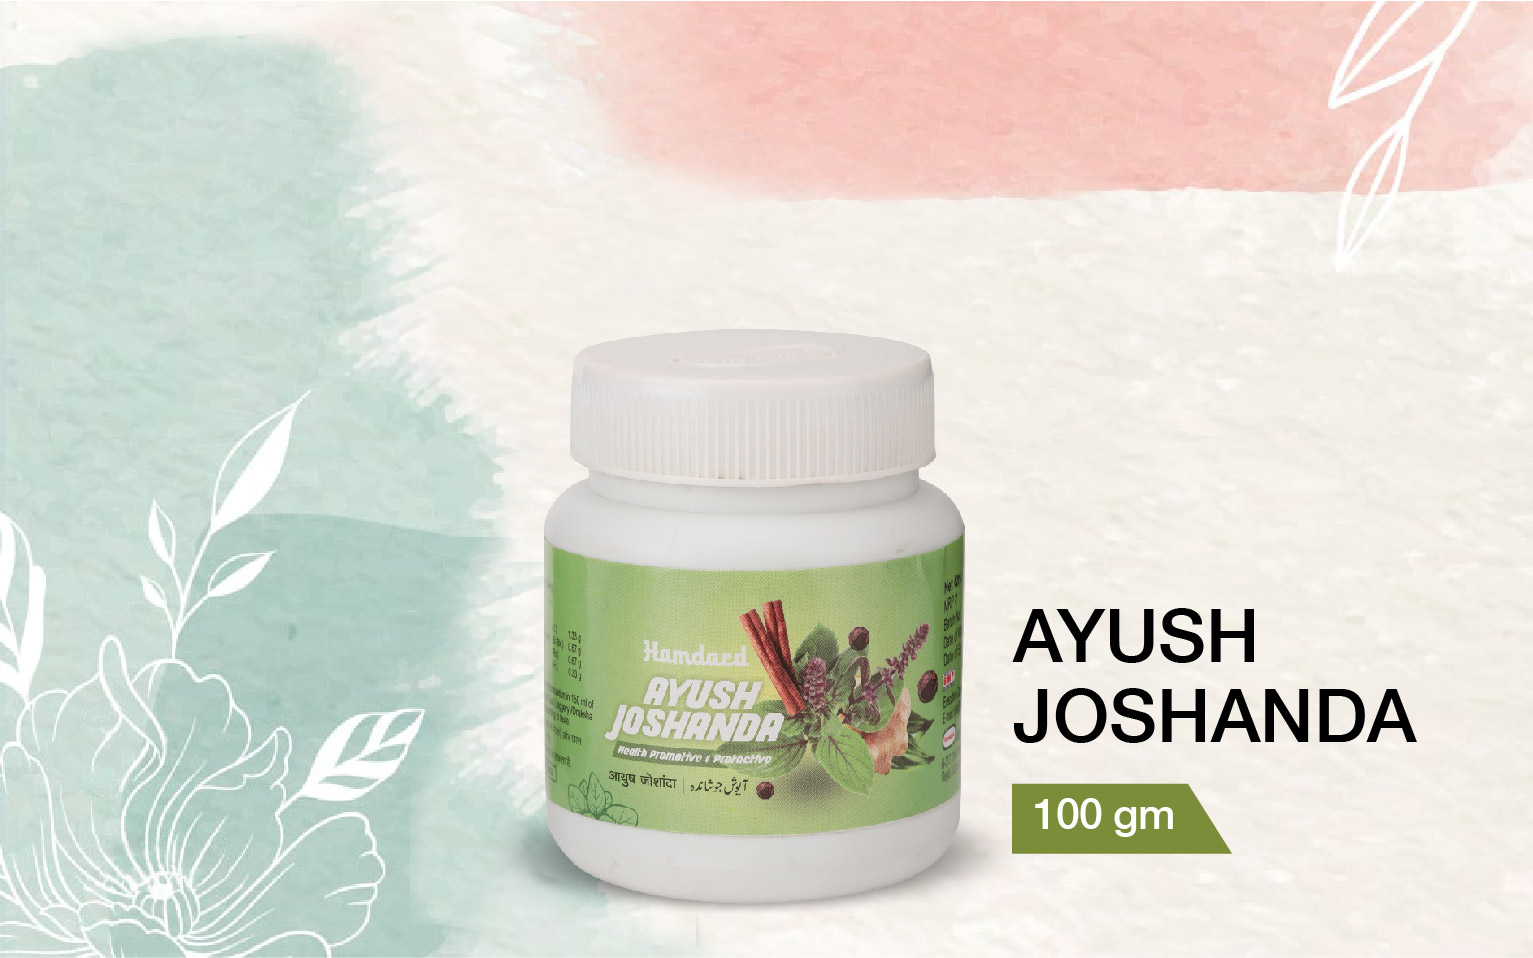 Ayush Joshanda